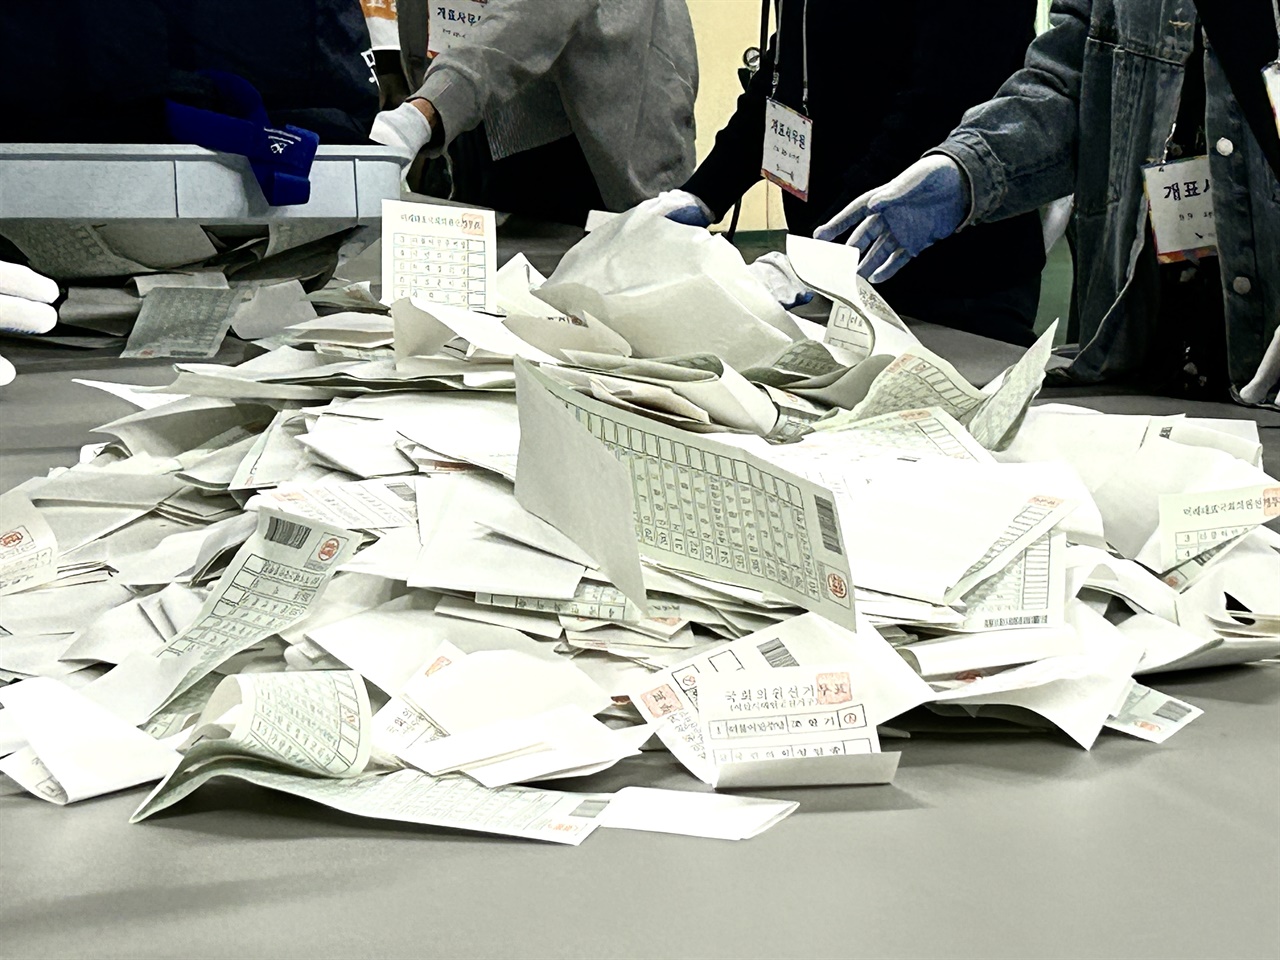 22대 총선 투표가 종료된 가운데, 오후 6시 35분 서산시 선관위원장의 사전 투표함 개함 선언과 함께 개표가 시작됐다.